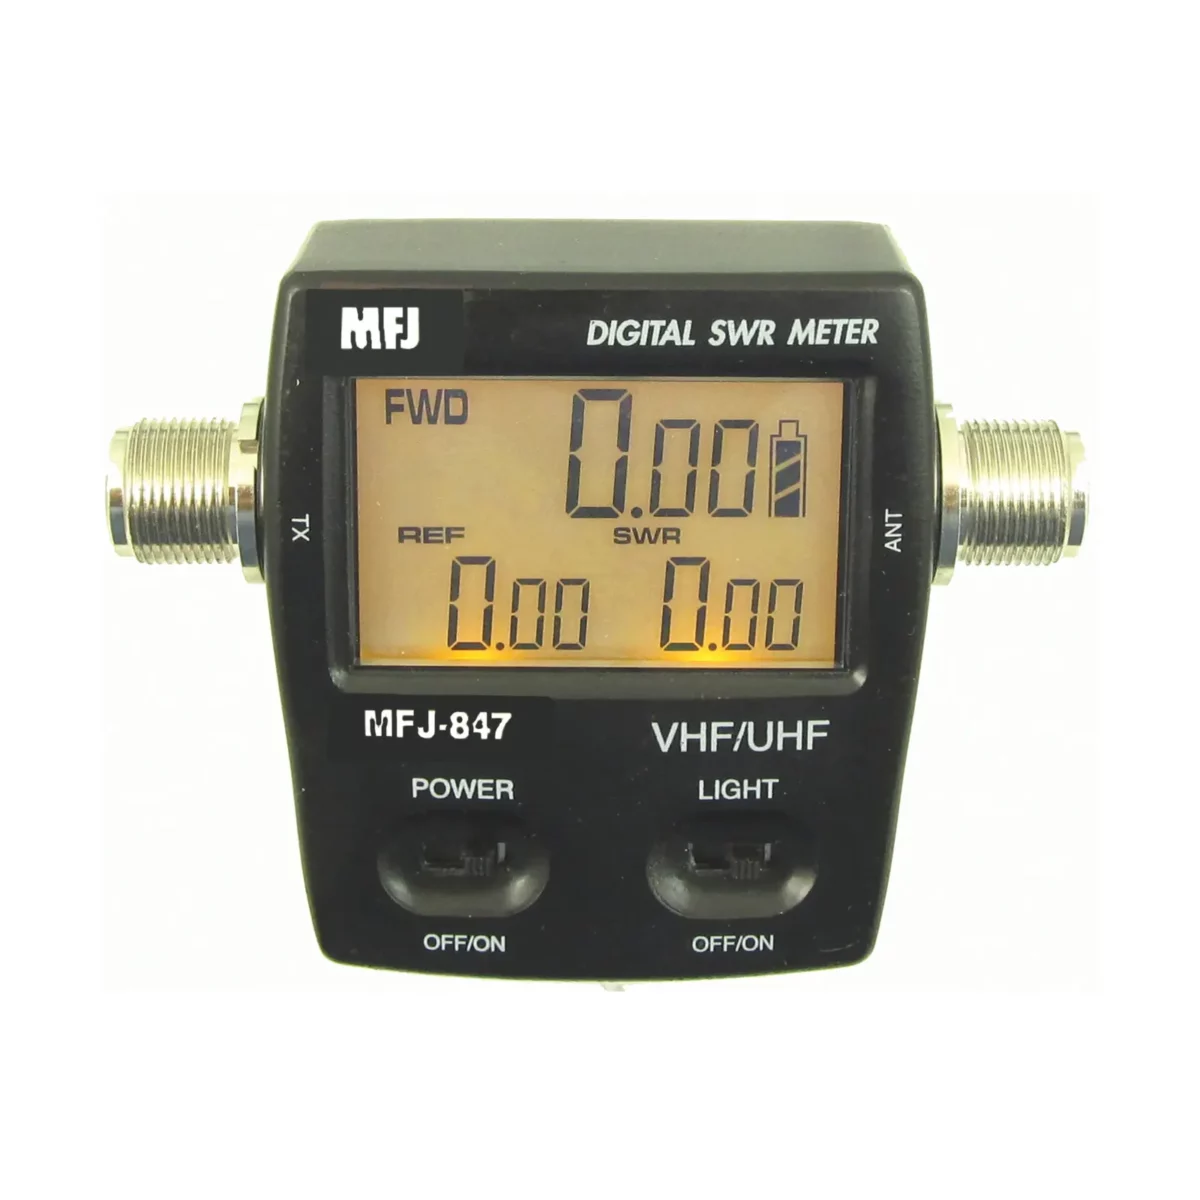 MFJ-847 digital wattmeter